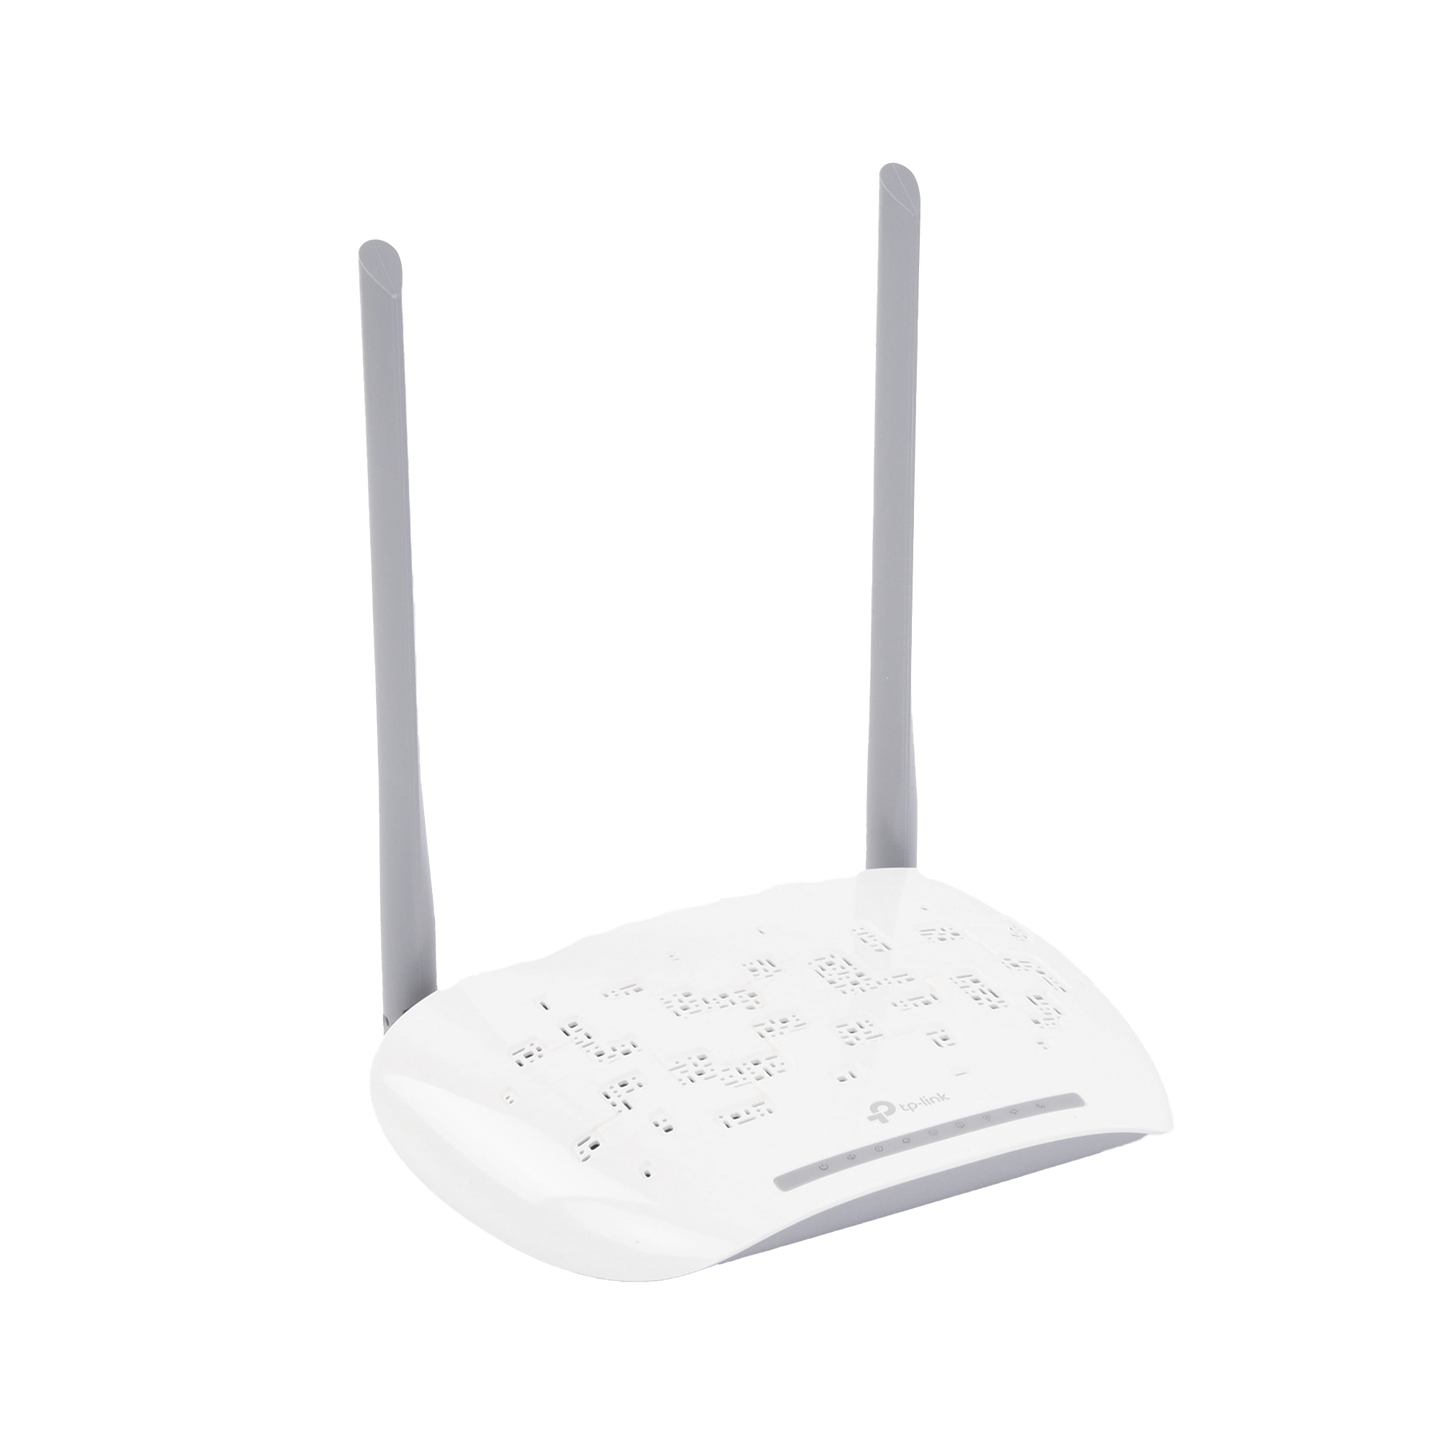 ONU/ONT - Router inalámbrico GPON N 300 Mbps / Frecuencia de 2.4 GHz / 1 puerto GPON SC-APC / 2 puertos LAN (1 GE/ 1 FE) / 1 puerto POTS (FXS) / Soporta AgiNet Config - AgiNet ASC (herramiento de gestión remota)